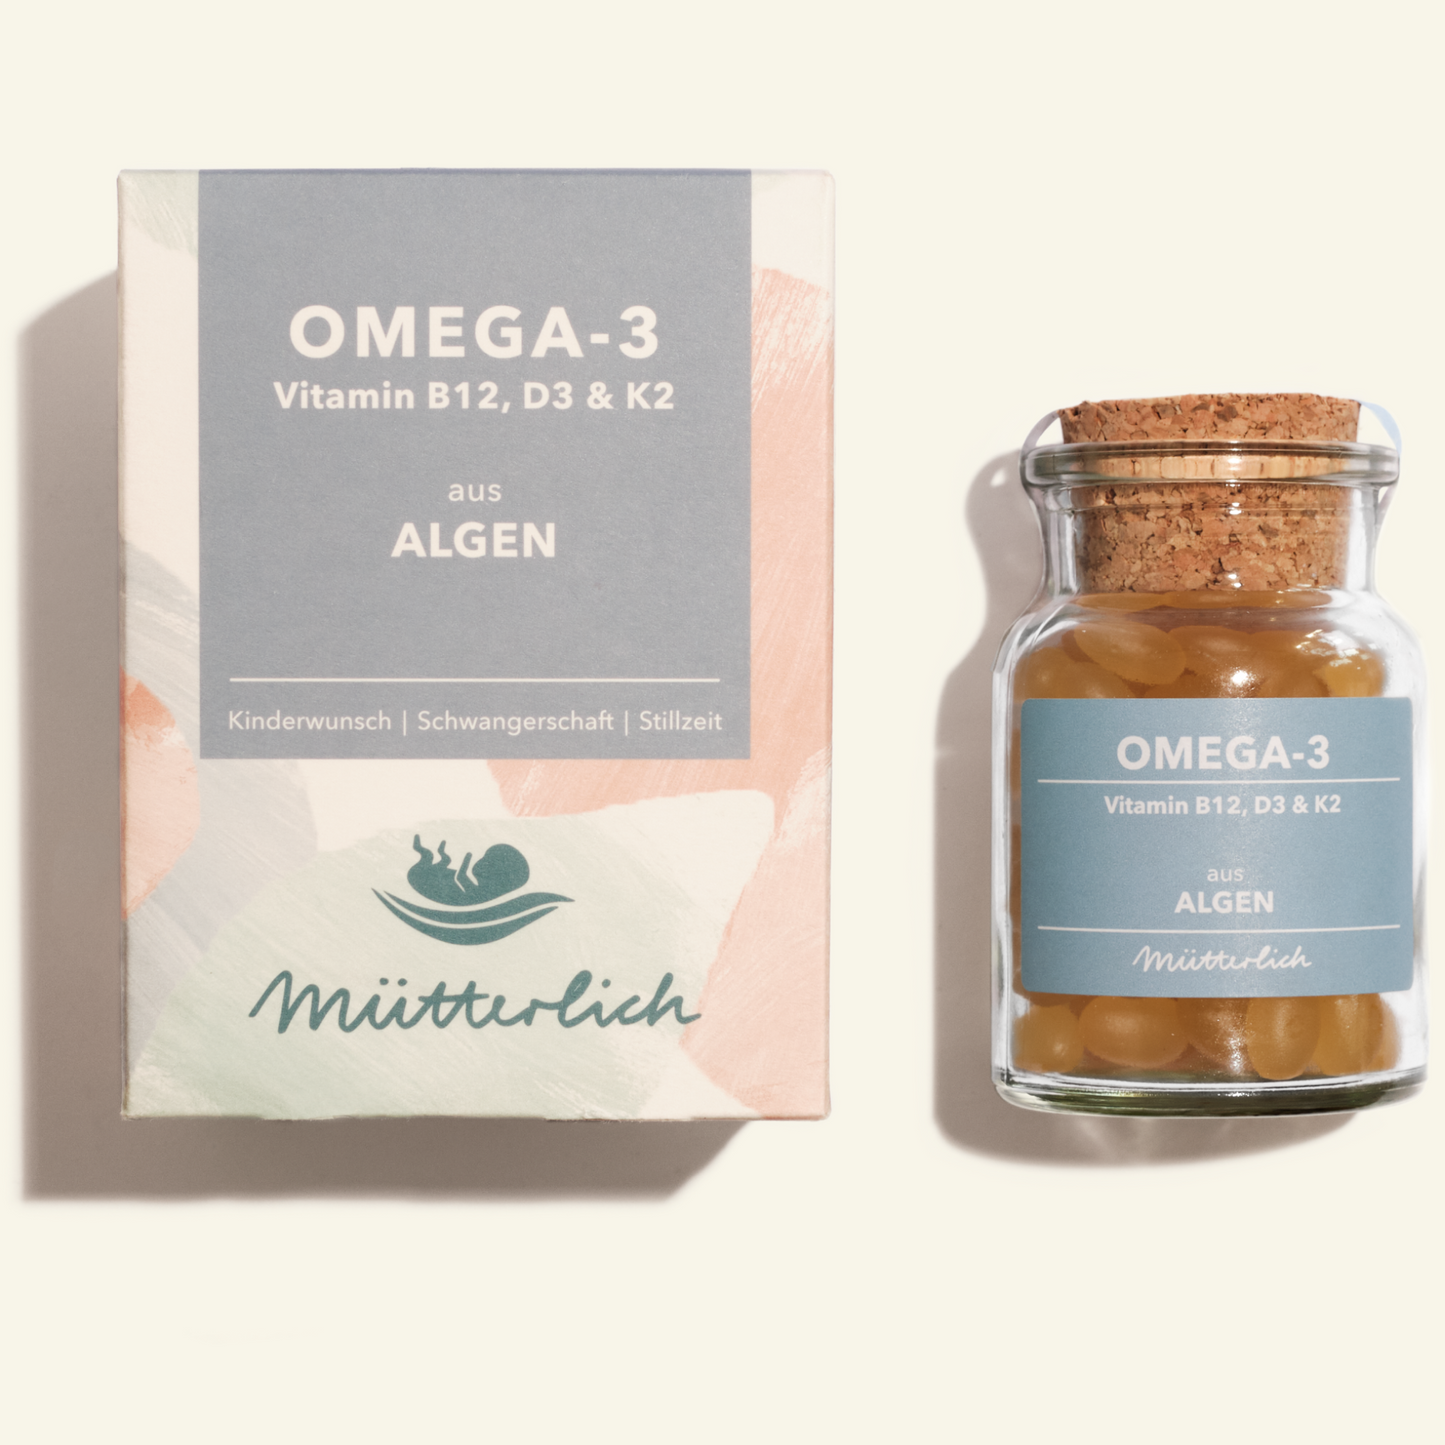 Omega-3 Mini-Kapseln aus Algen